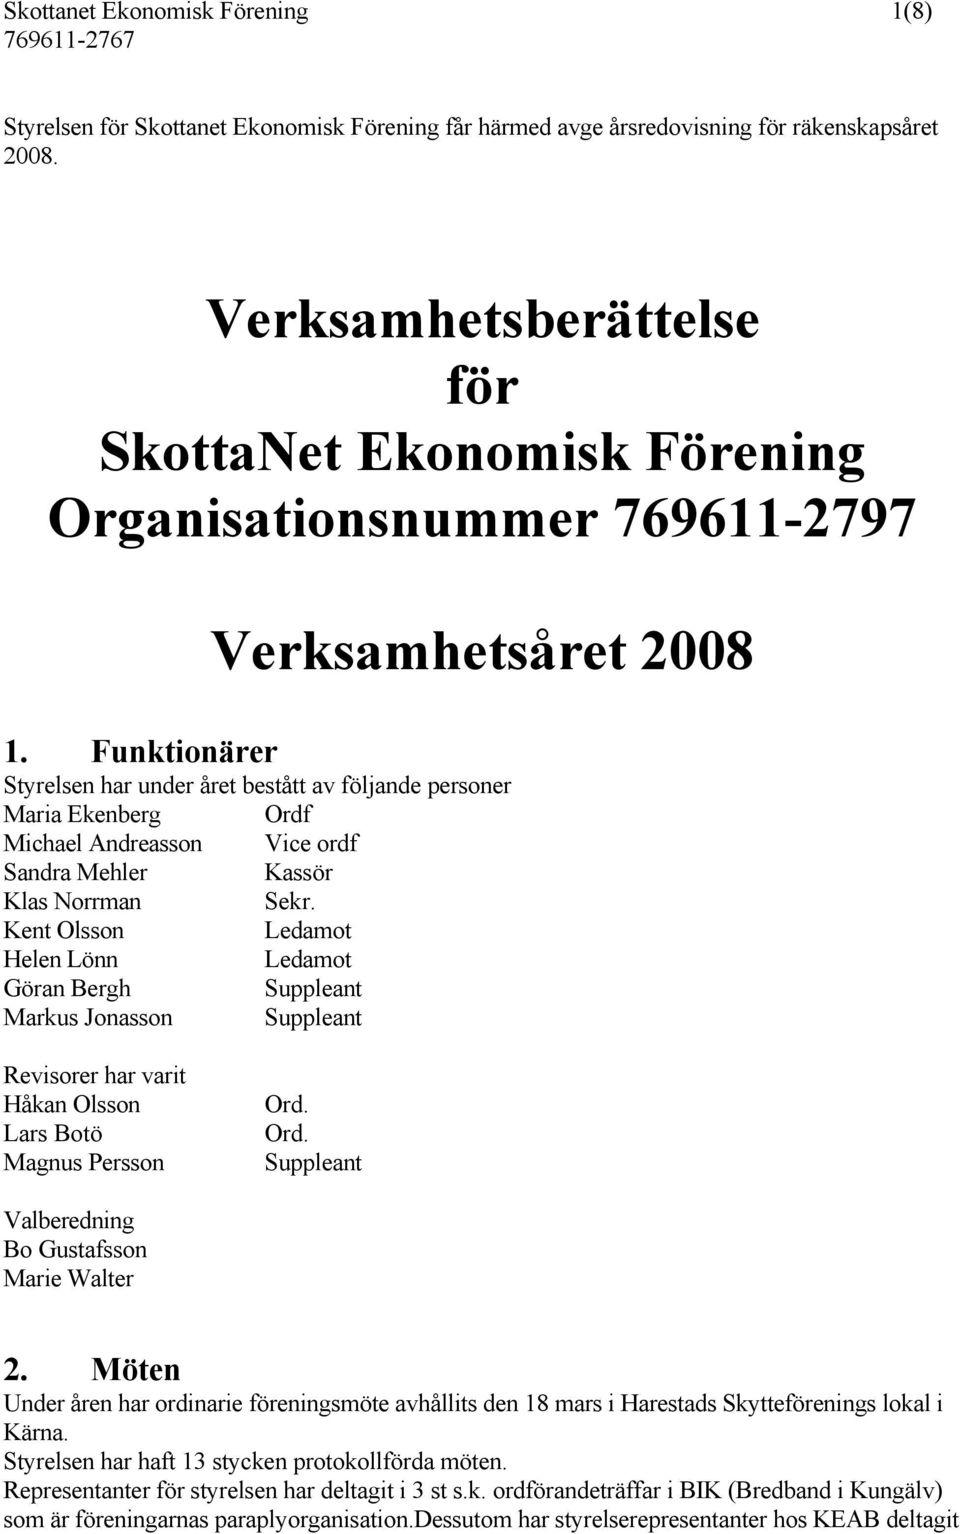 Funktionärer Verksamhetsåret 2008 Styrelsen har under året bestått av följande personer Maria Ekenberg Ordf Michael Andreasson Vice ordf Sandra Mehler Kassör Klas Norrman Sekr.